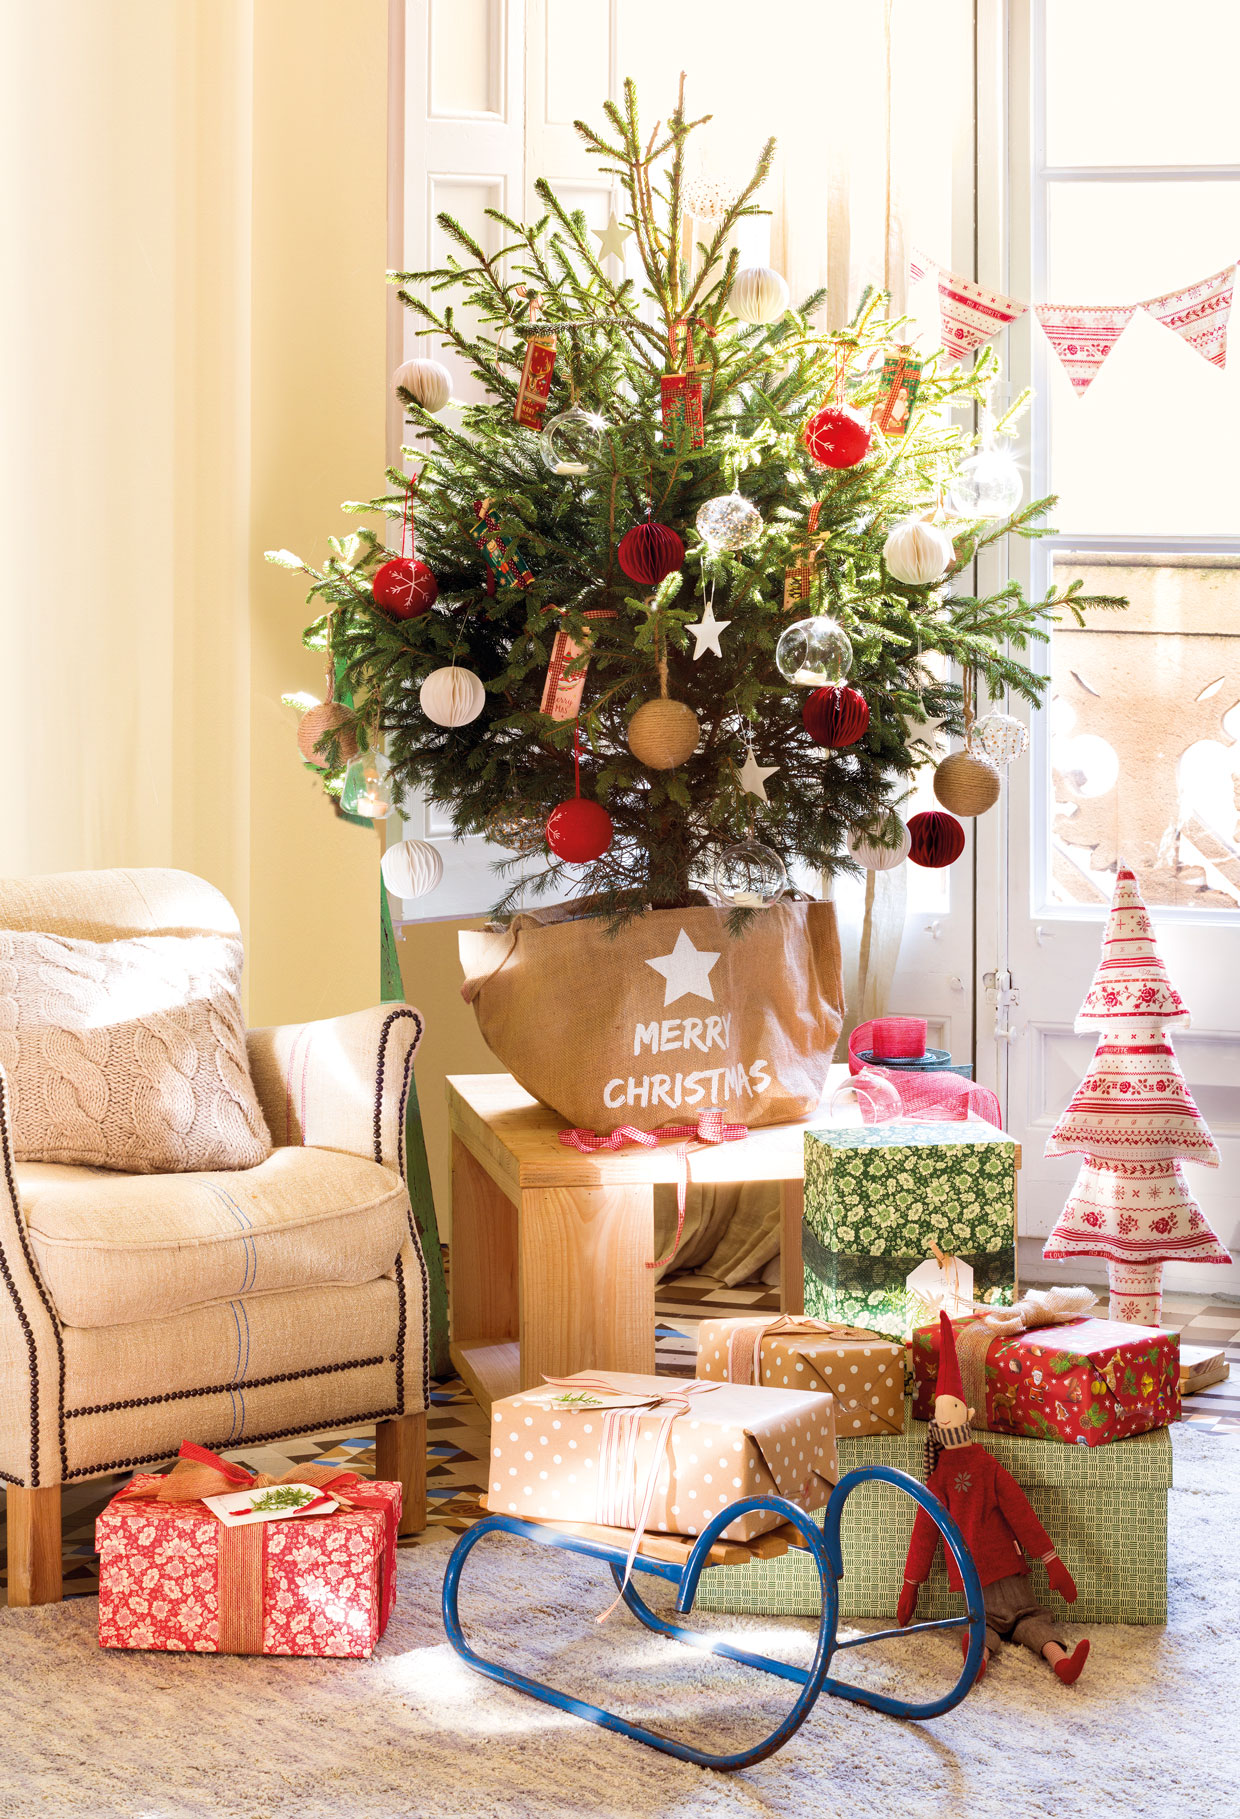 Salón con mesa auxiliar de madera, adornos navideños y mini árbol de Navidad.